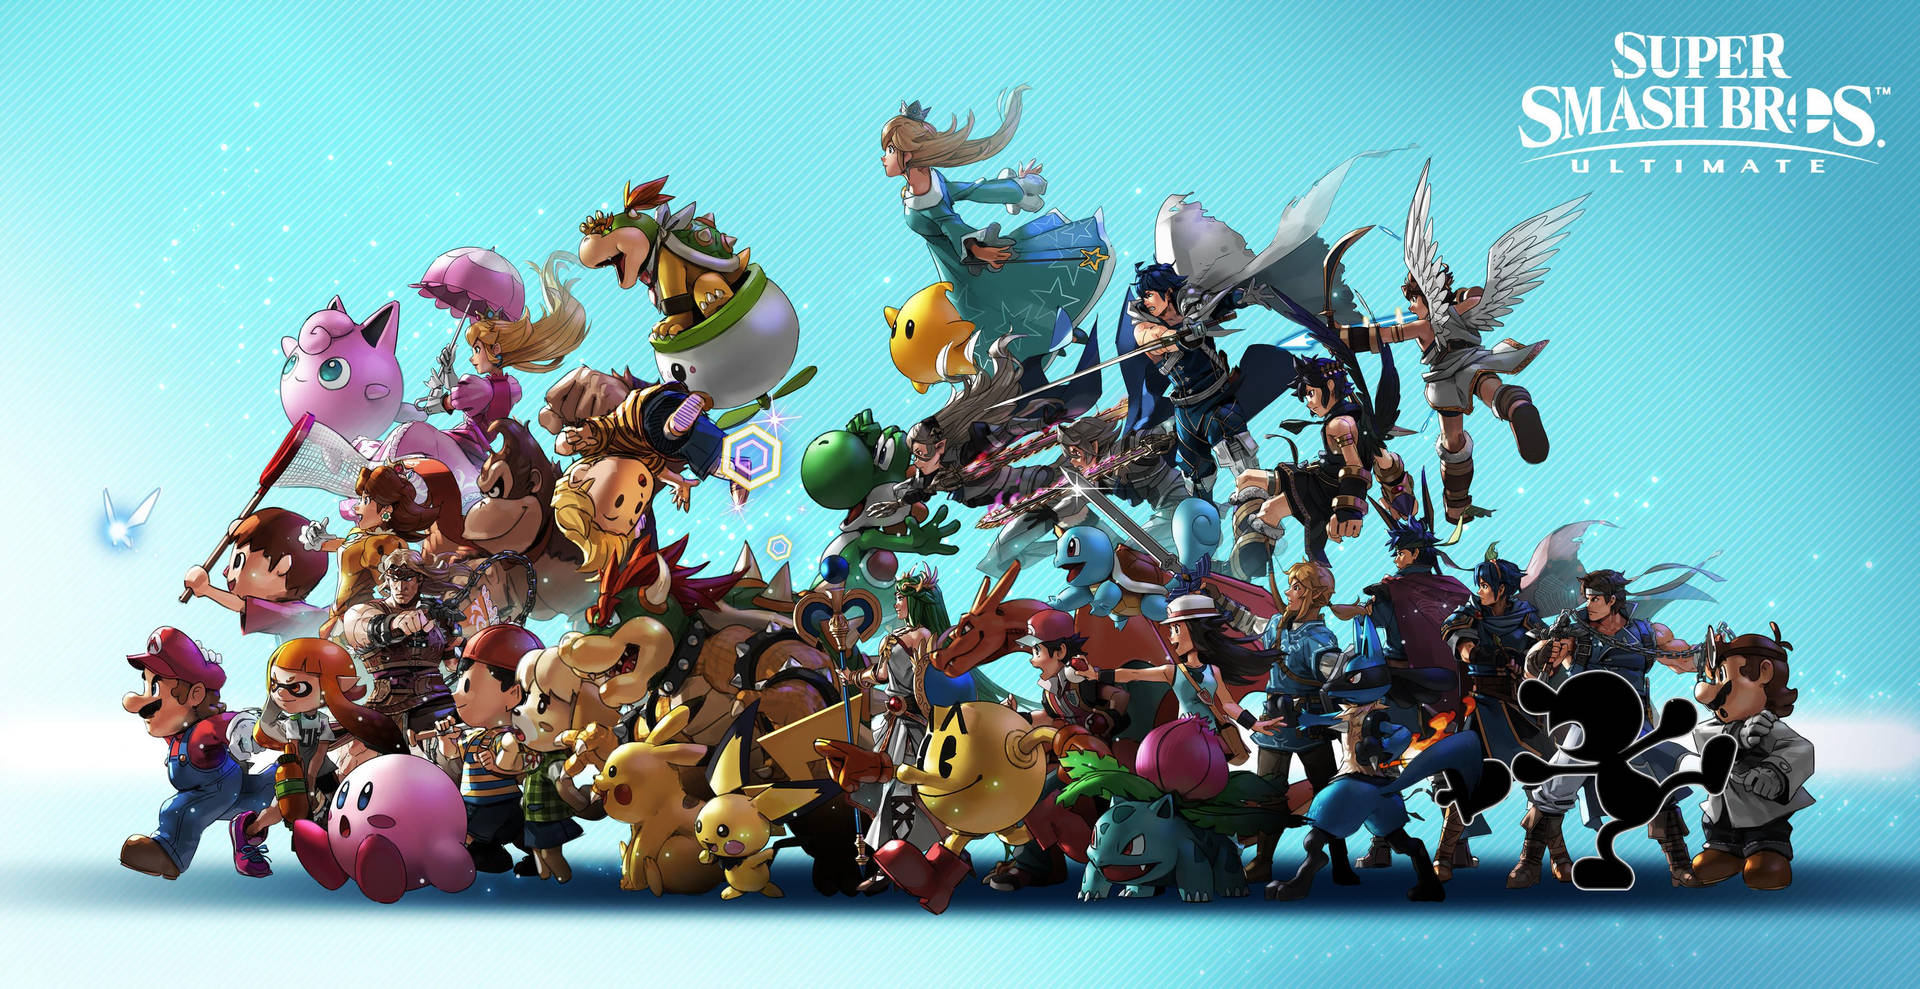 Heroes Unite in Super Smash Bros Ultimate! Wallpaper